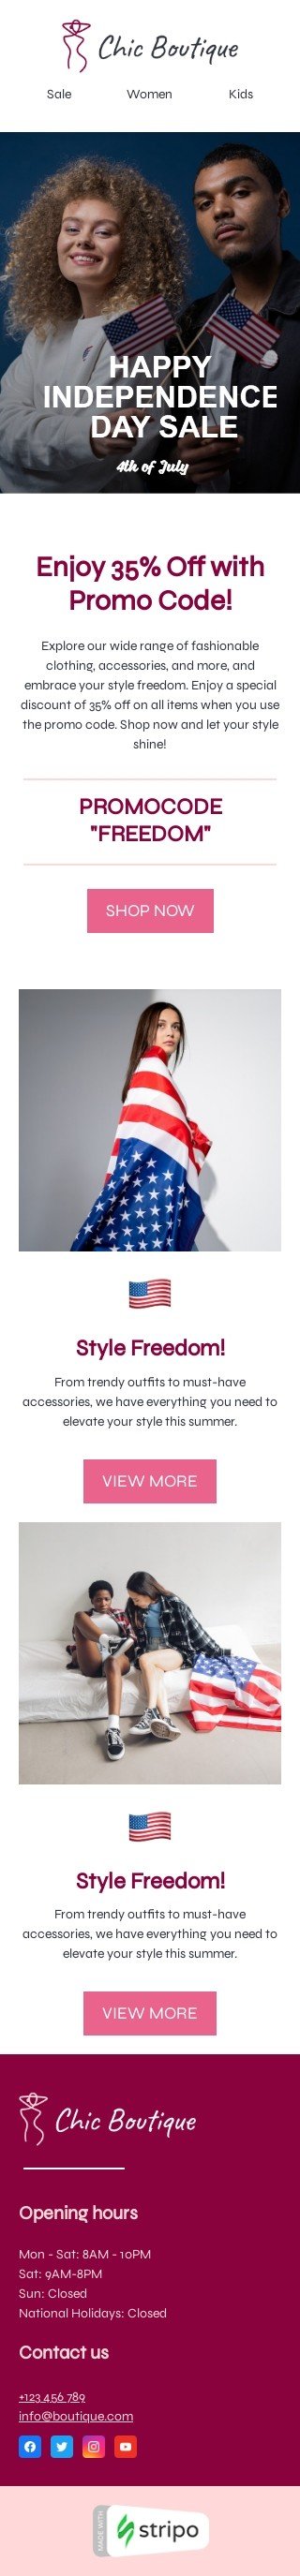 Plantilla de correo electrónico «Libertad de estilo» de Día de la Independencia para la industria de moda Vista de móvil